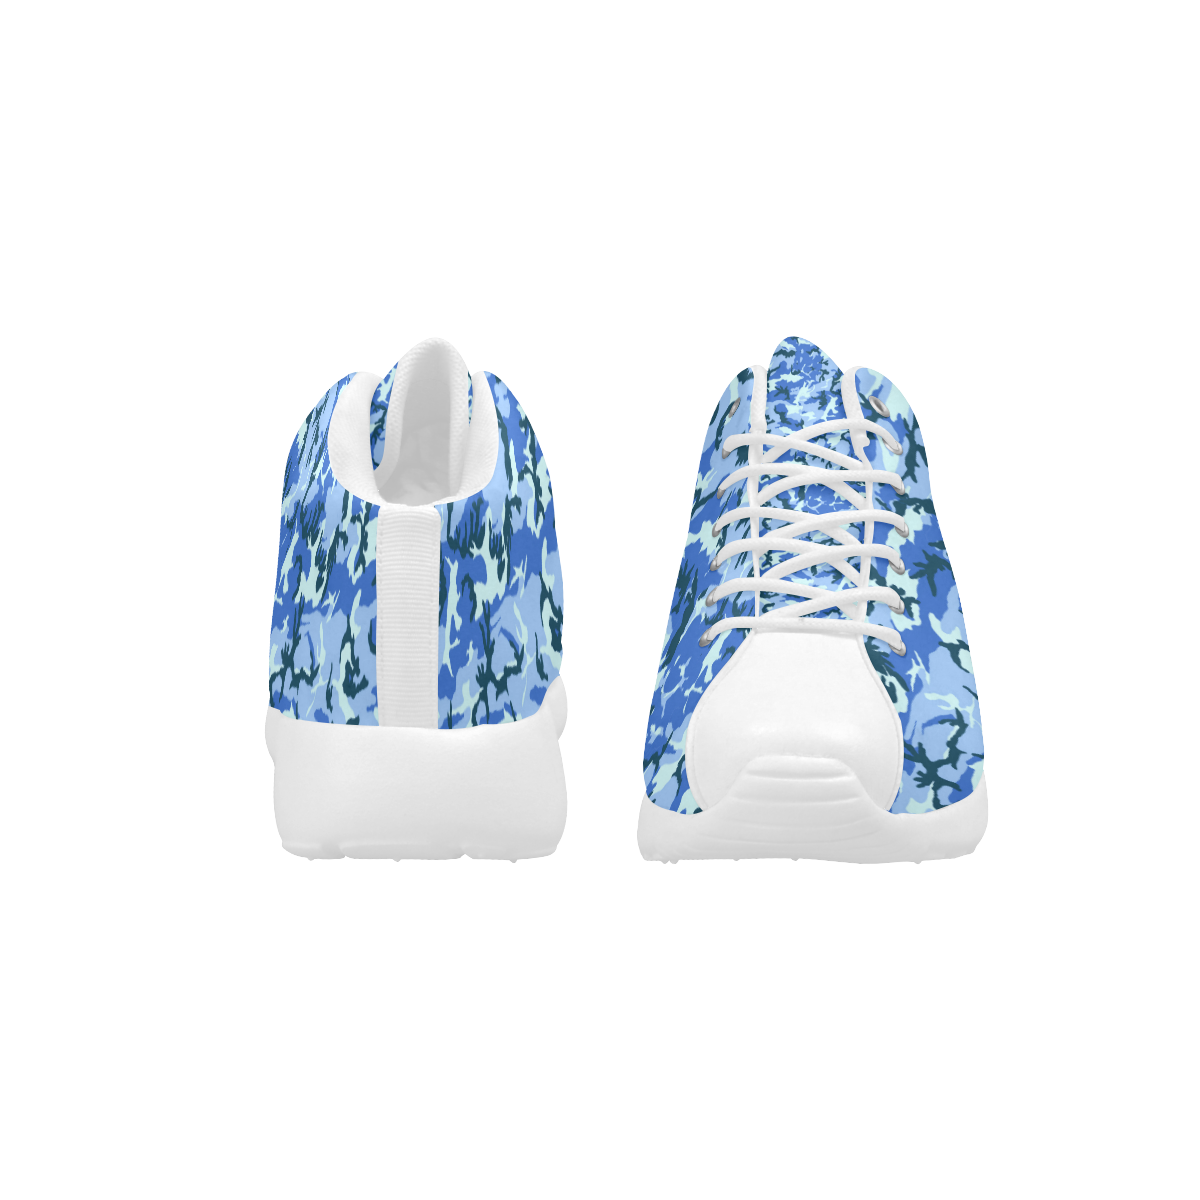 Woodland Blue Camouflage Women's Basketball Training Shoes (Model 47502)